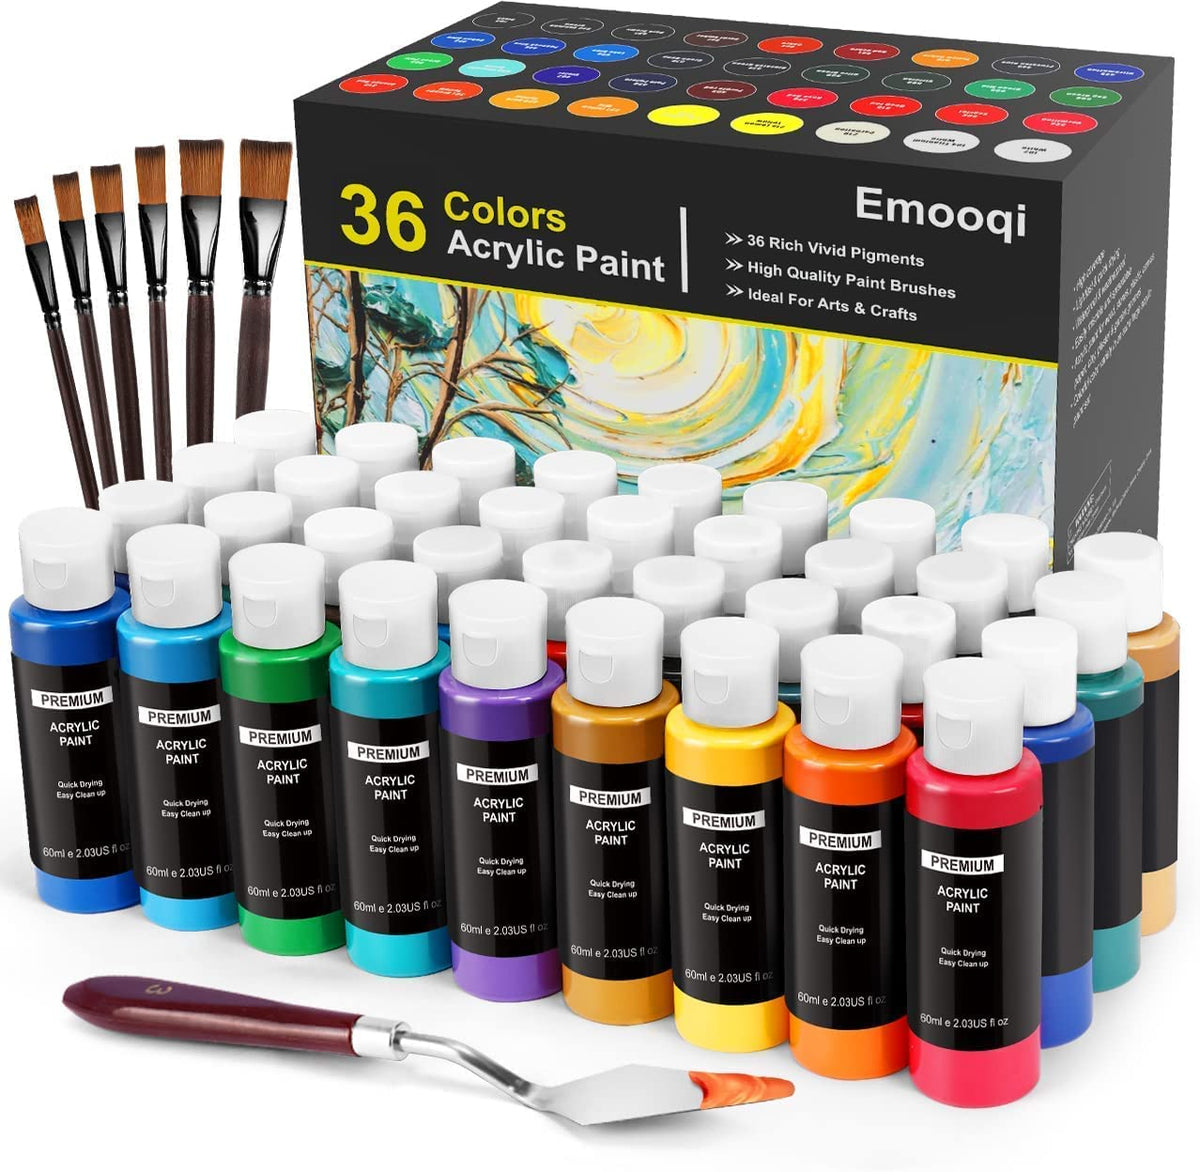 Metallic Acrylic Paint, Acrylic Paint Set, Acrylic Paint Brushes